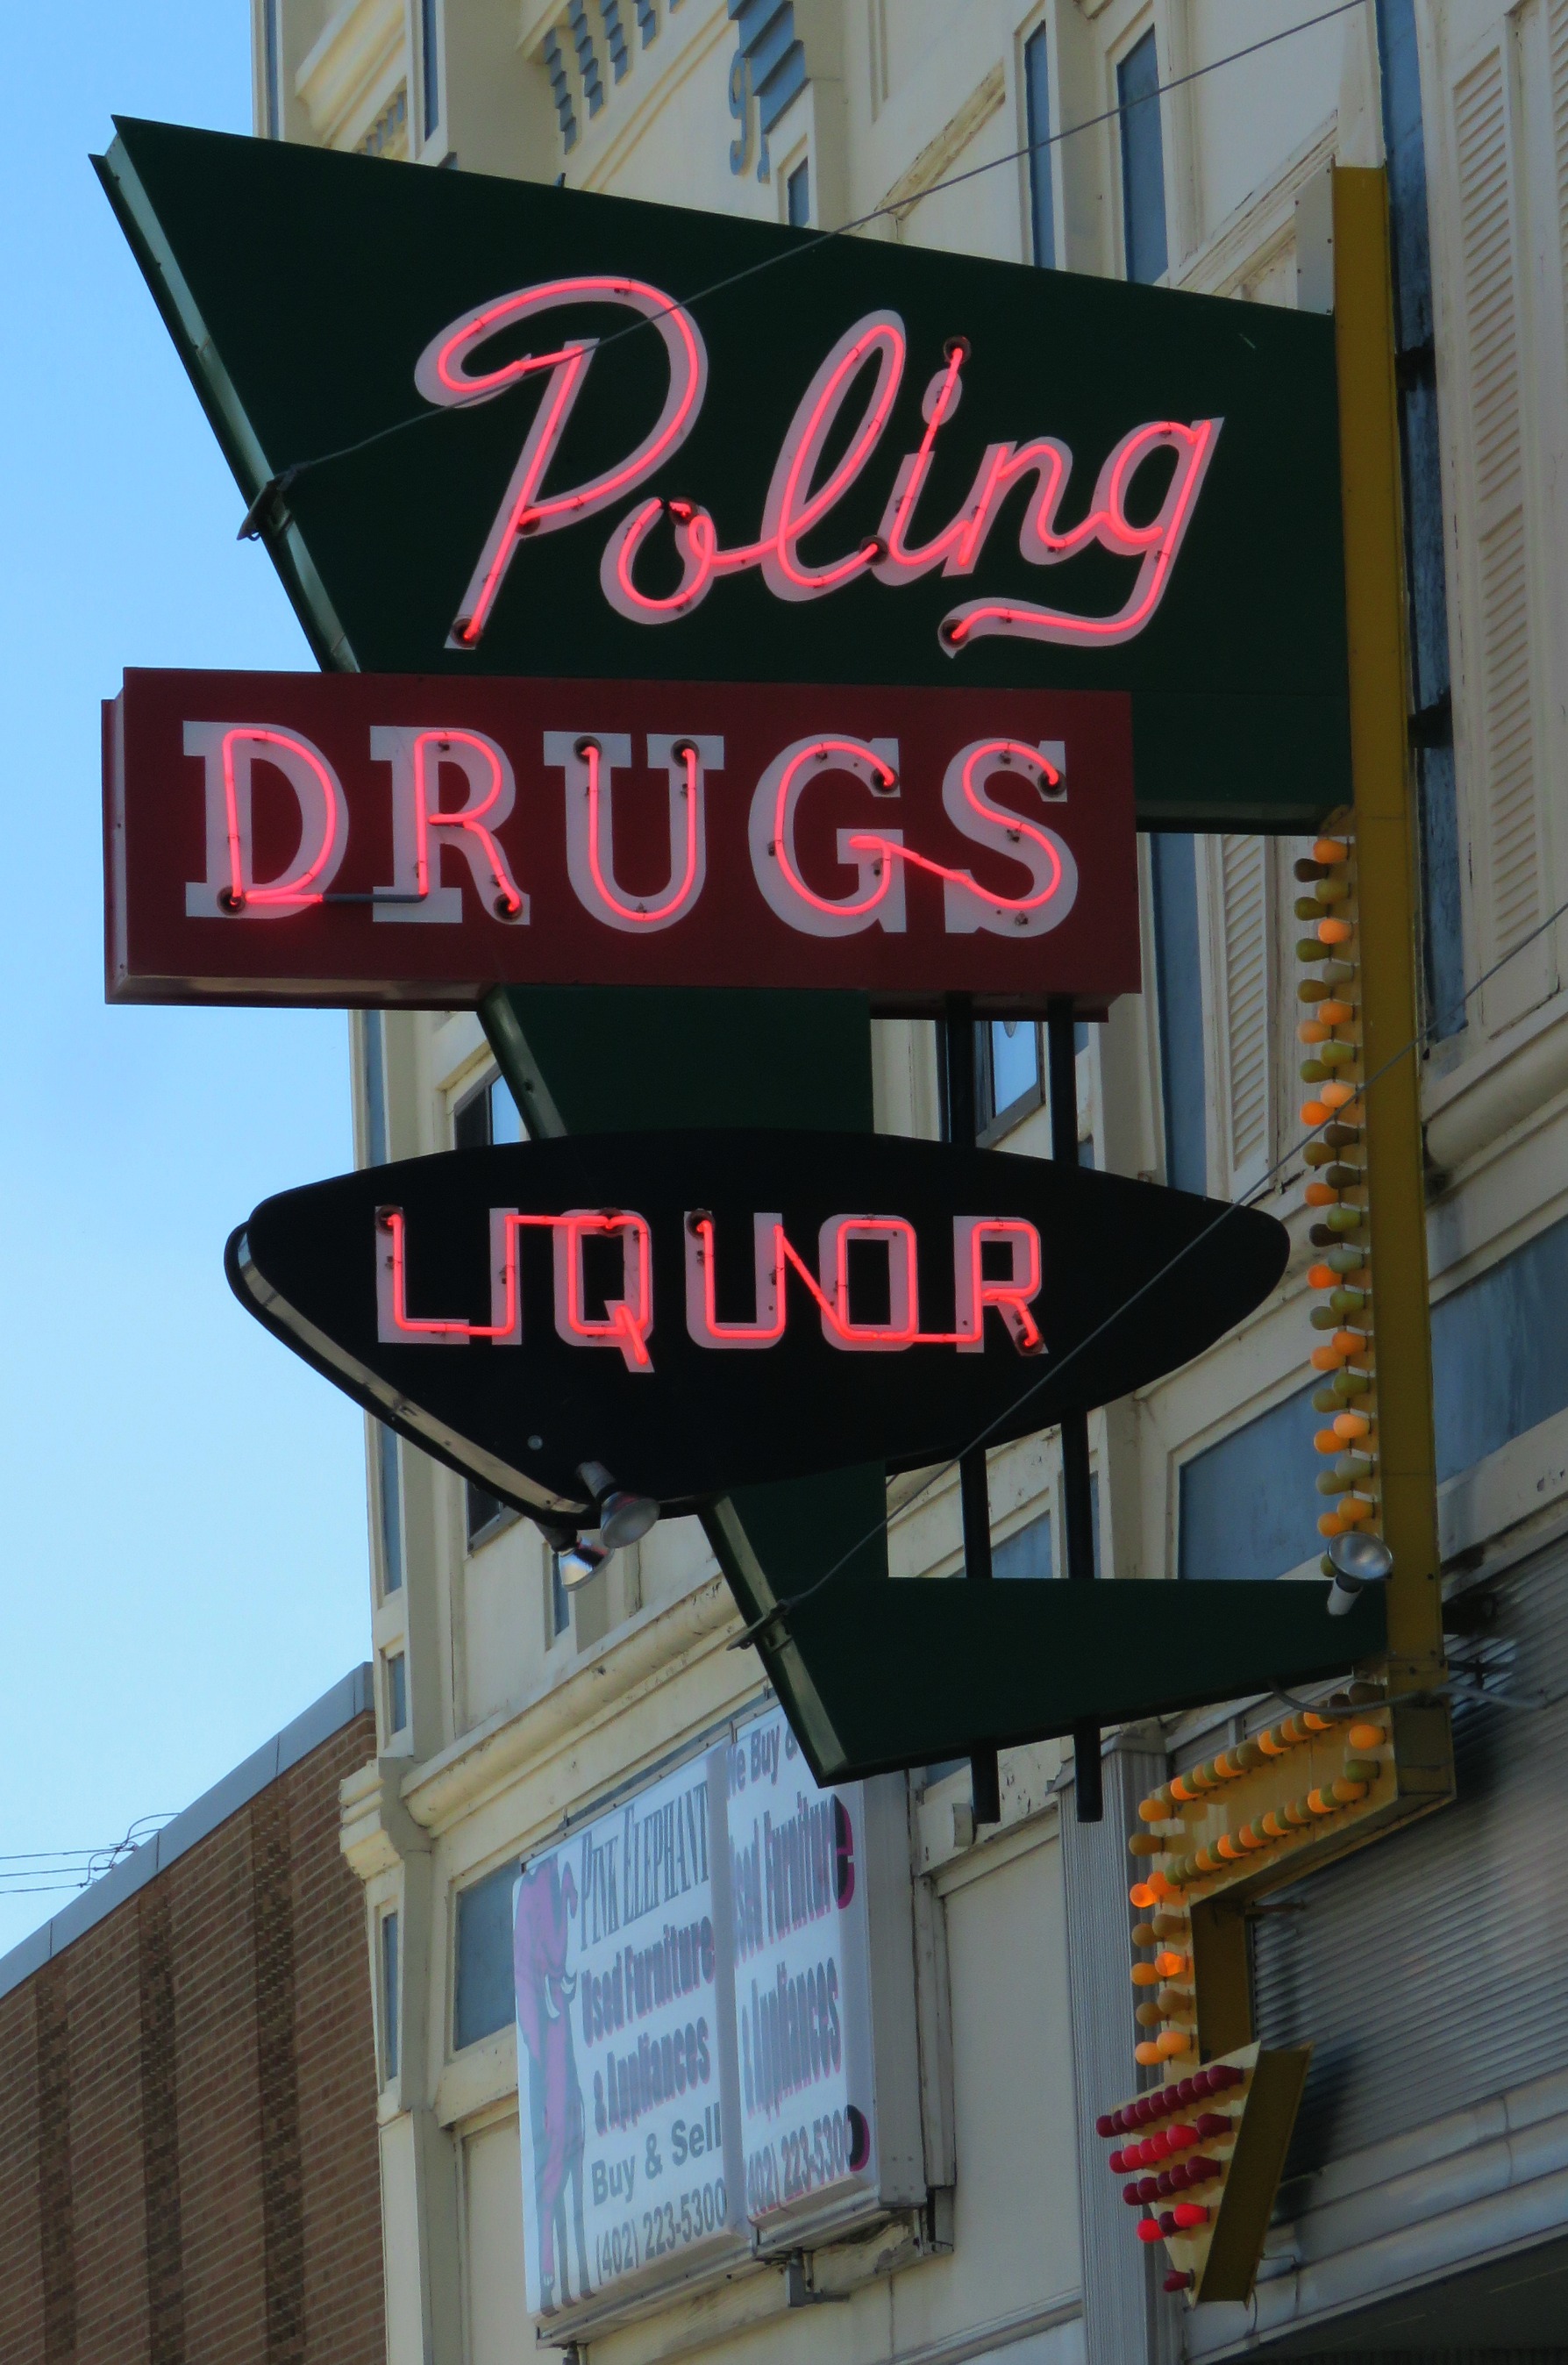 Poling Drug Store - 711 Court Street, Beatrice, Nebraska U.S.A. - September 26, 2015